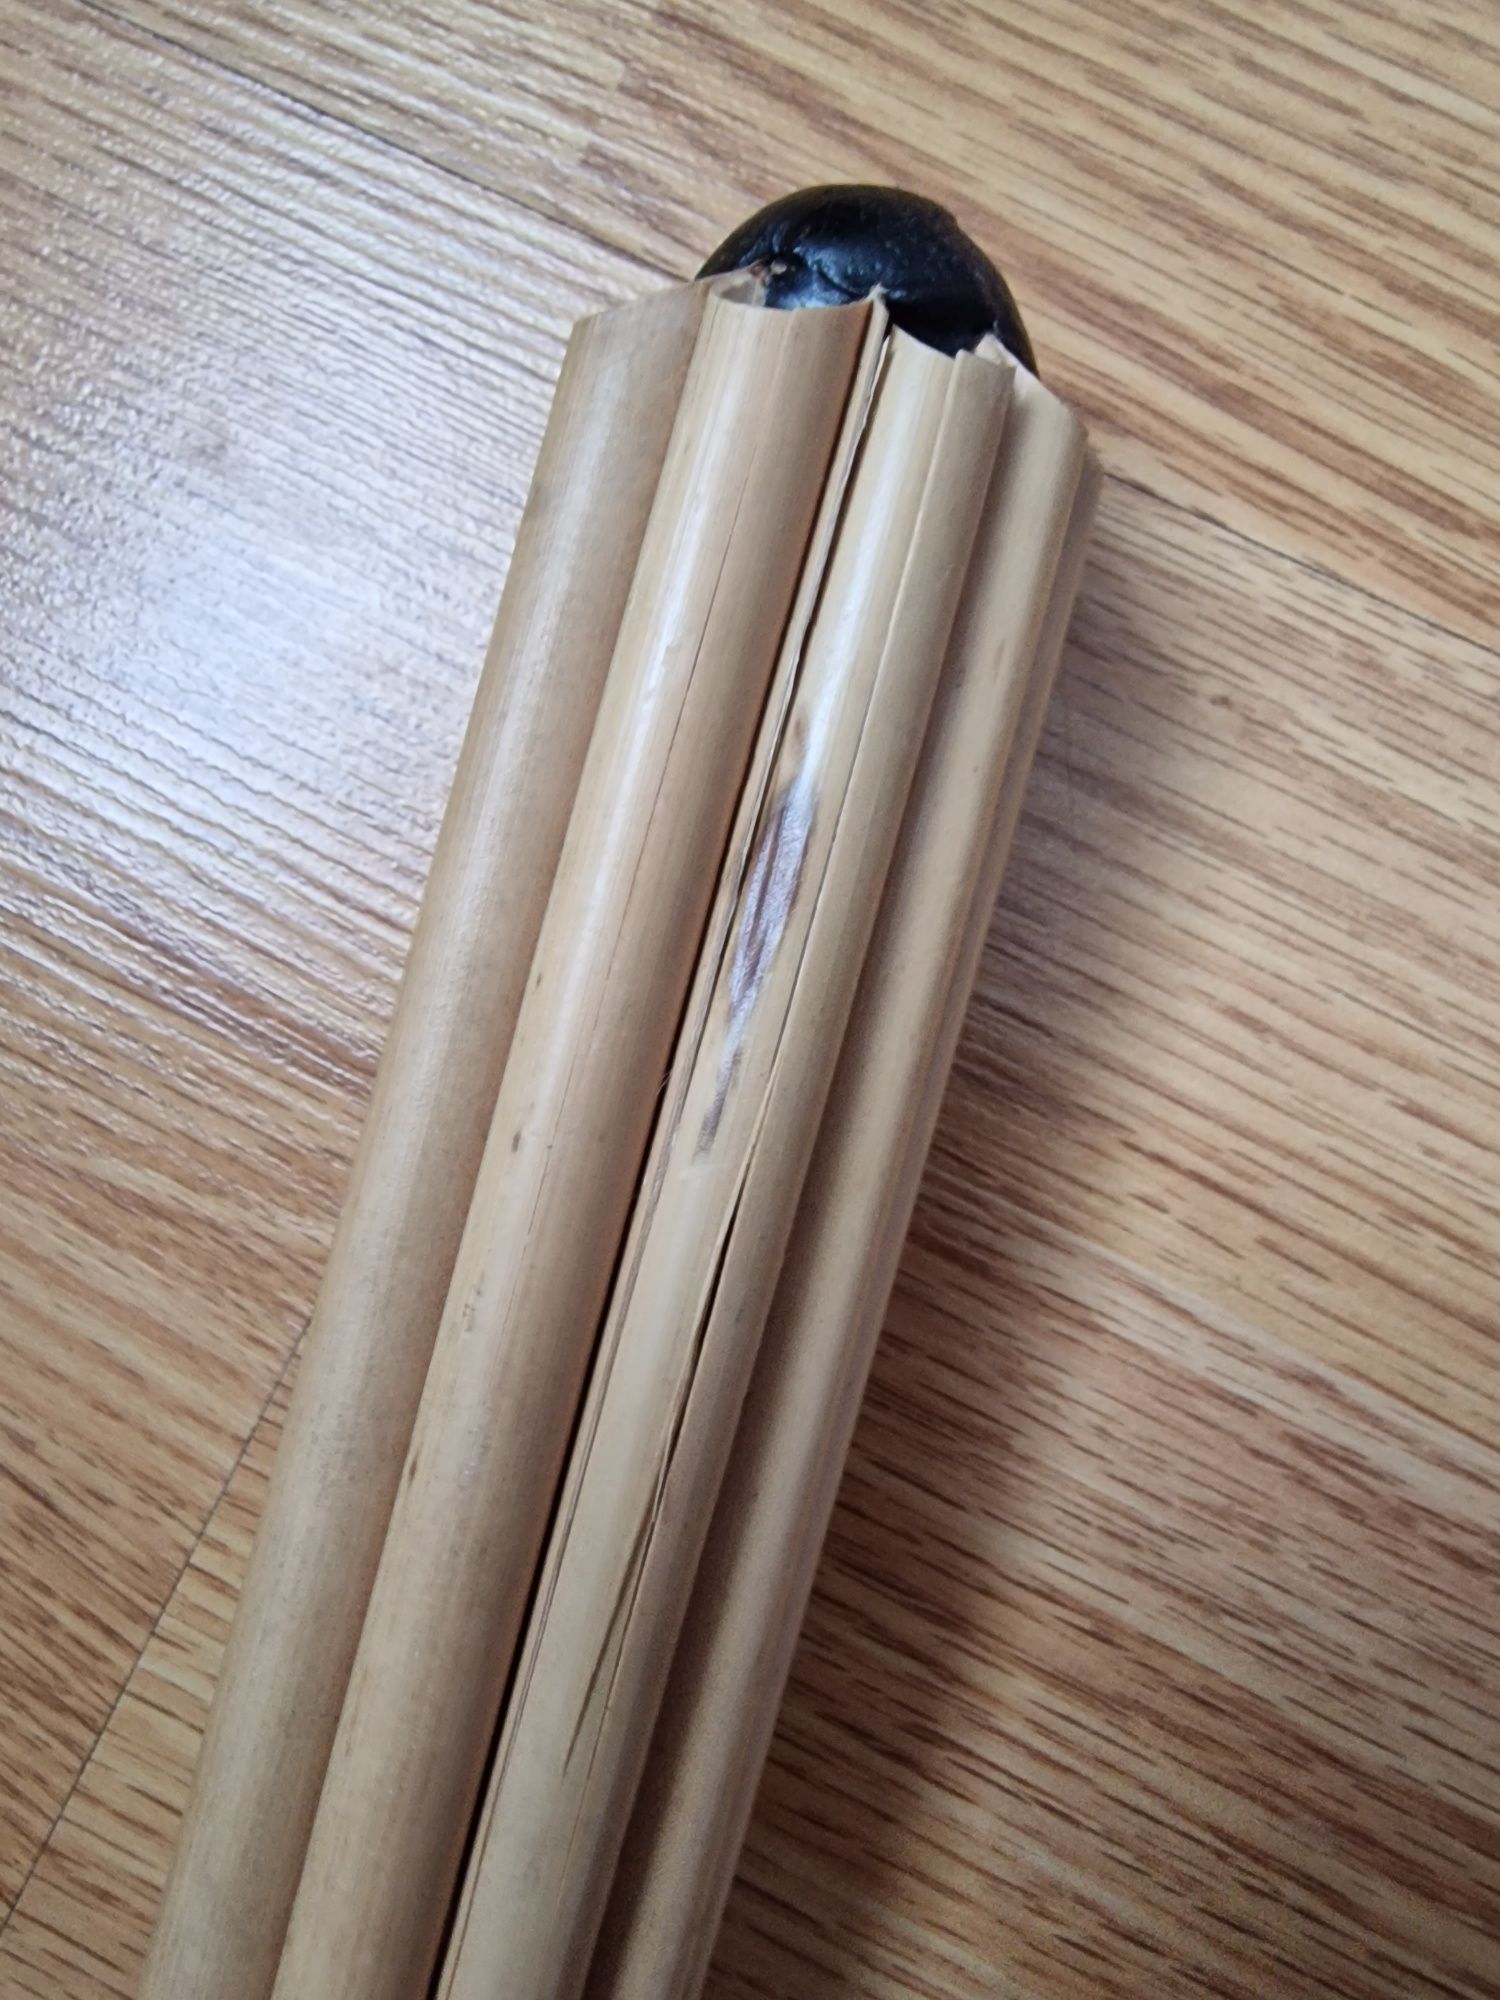 Продам/обменяю тайскую флейту из бамбука